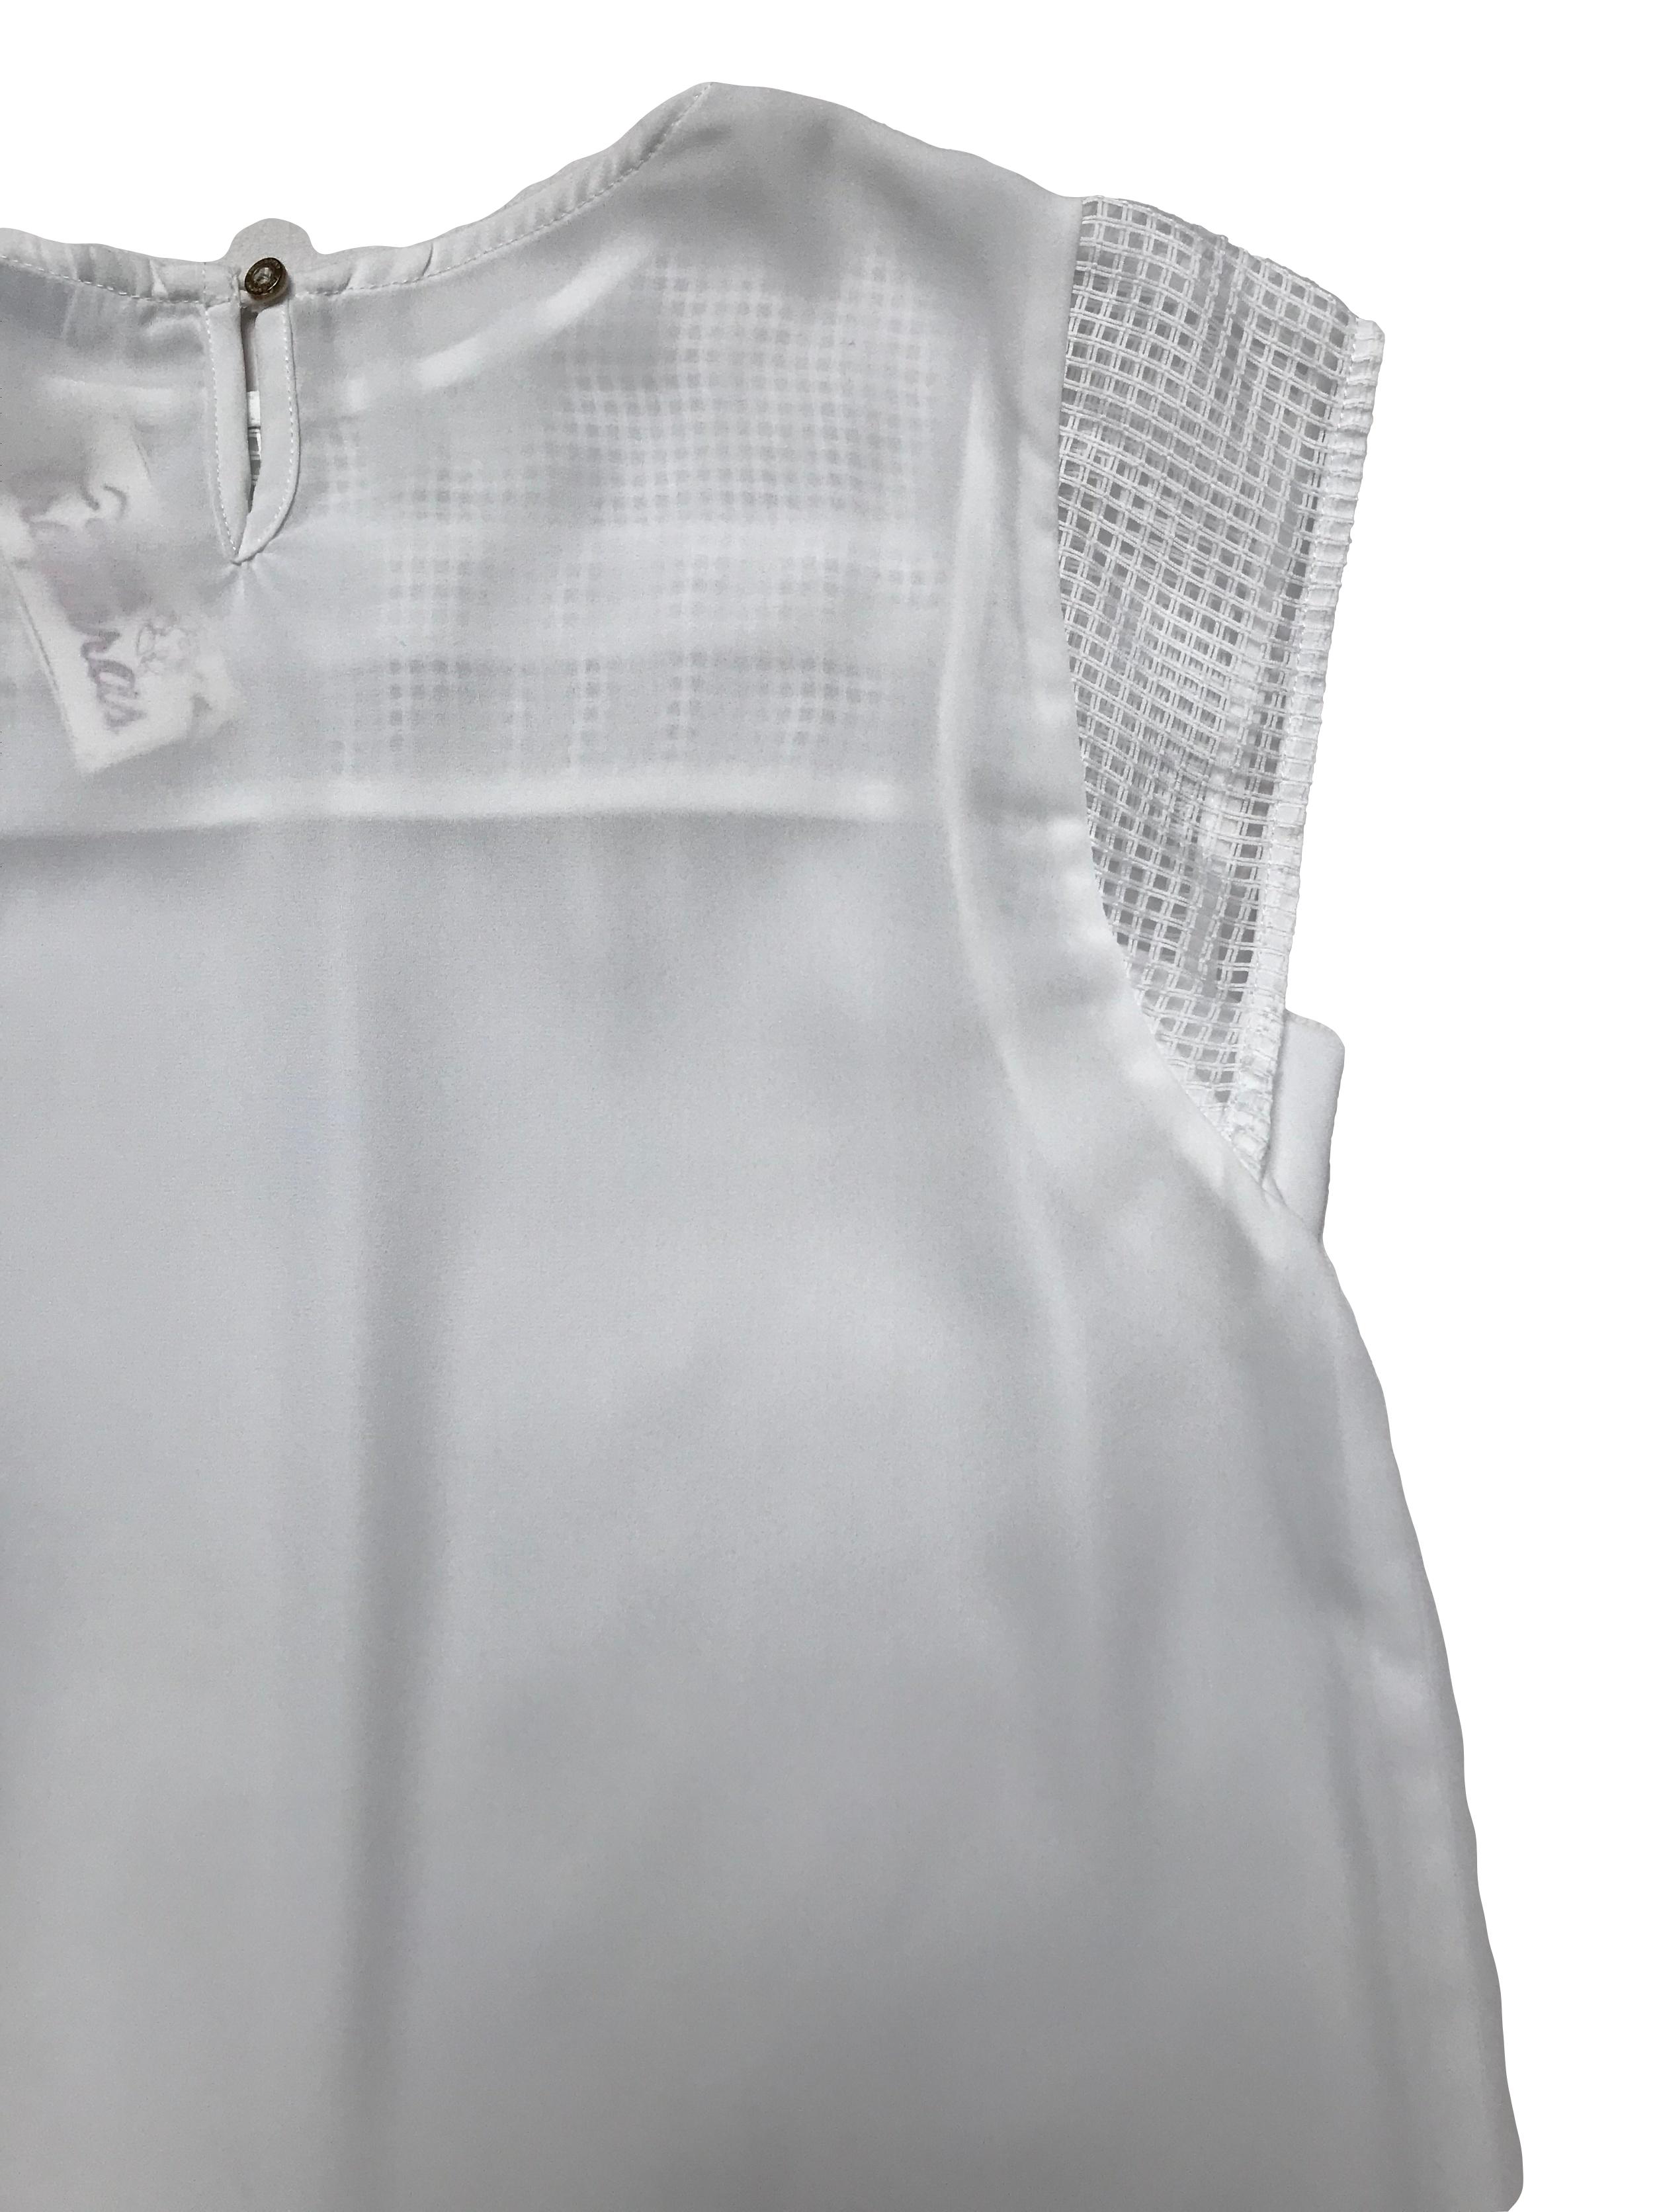 Blusa Mentha&chocolate de gasa blanca con tela tipo rejillas en pecho y mangas, tiene botón posterior en el cuello. Busto 92cm Largo 58cm 